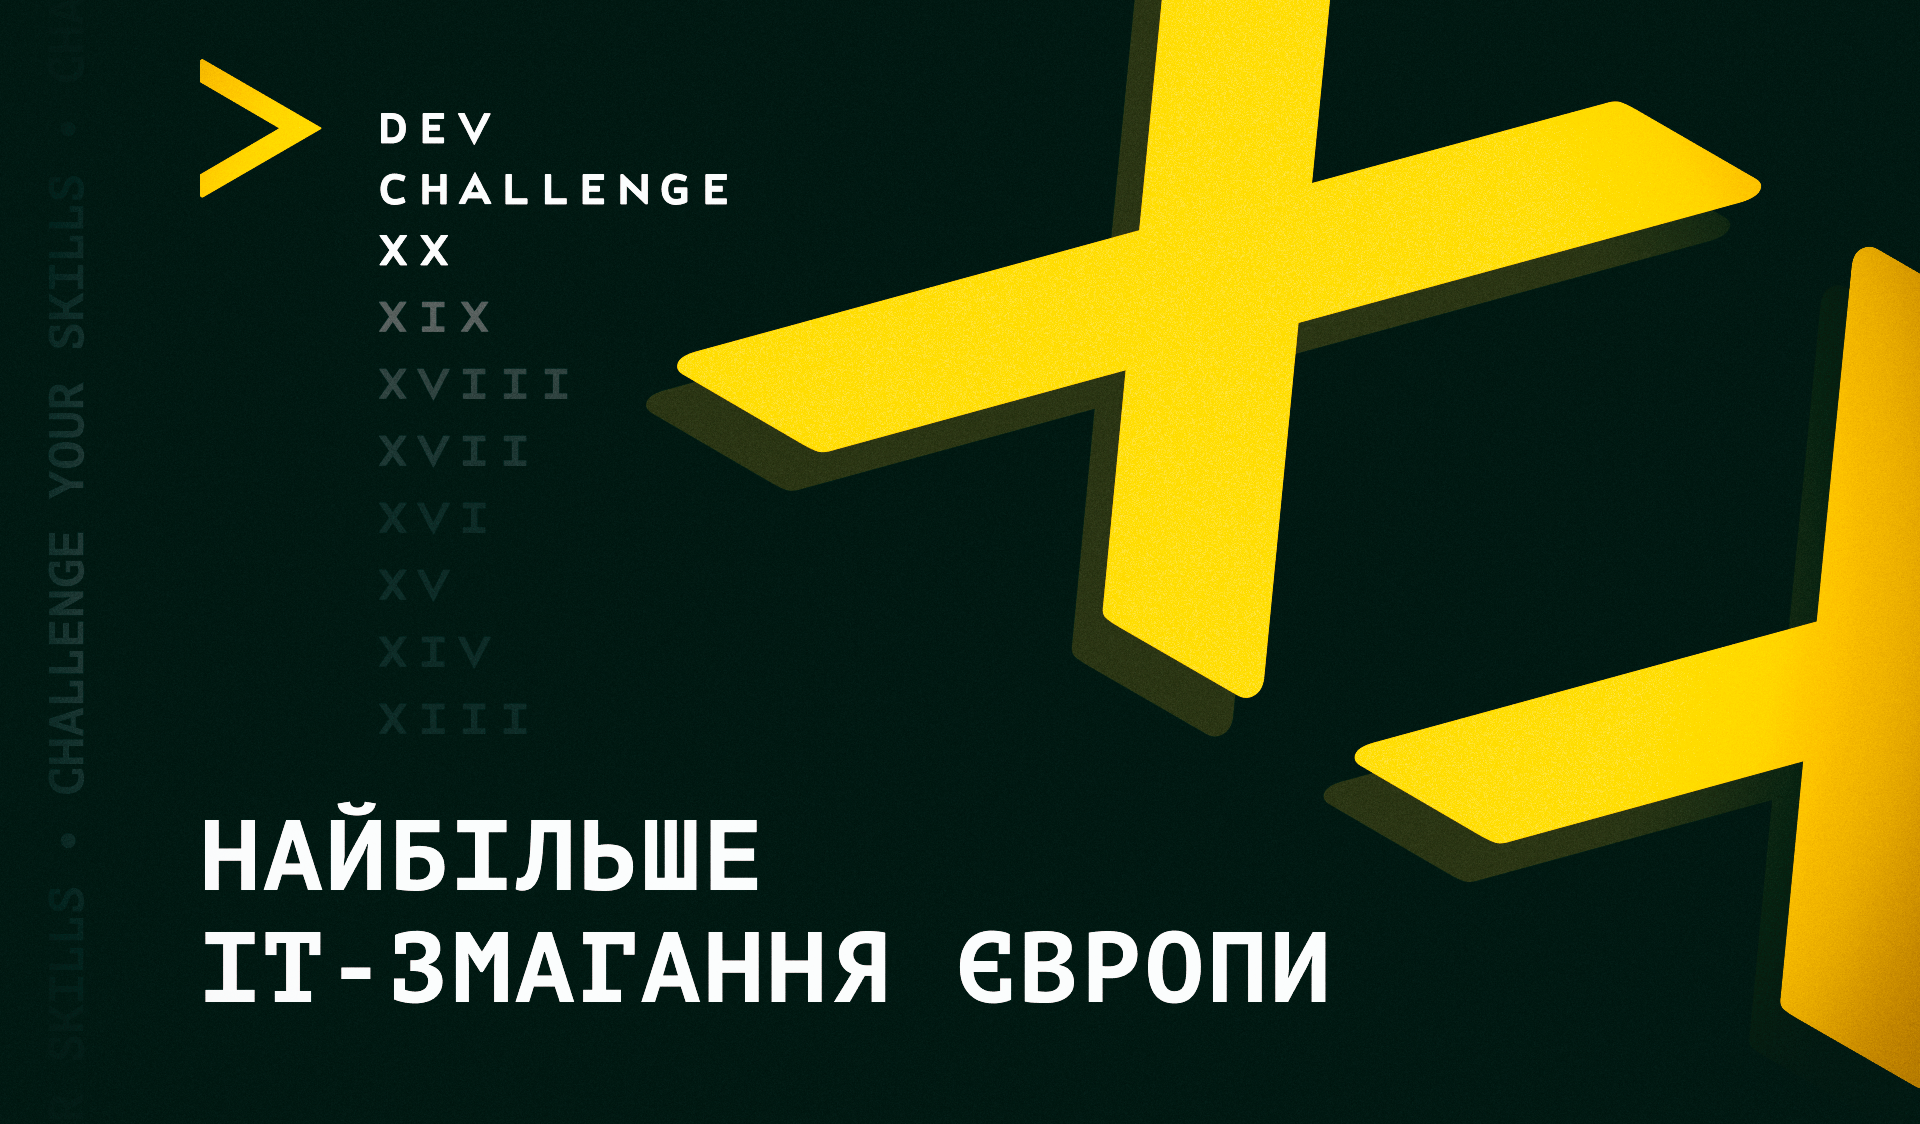 20-й сезон найбільшого європейського ІТ-змагання:   триває реєстрація на DEV Challenge XX